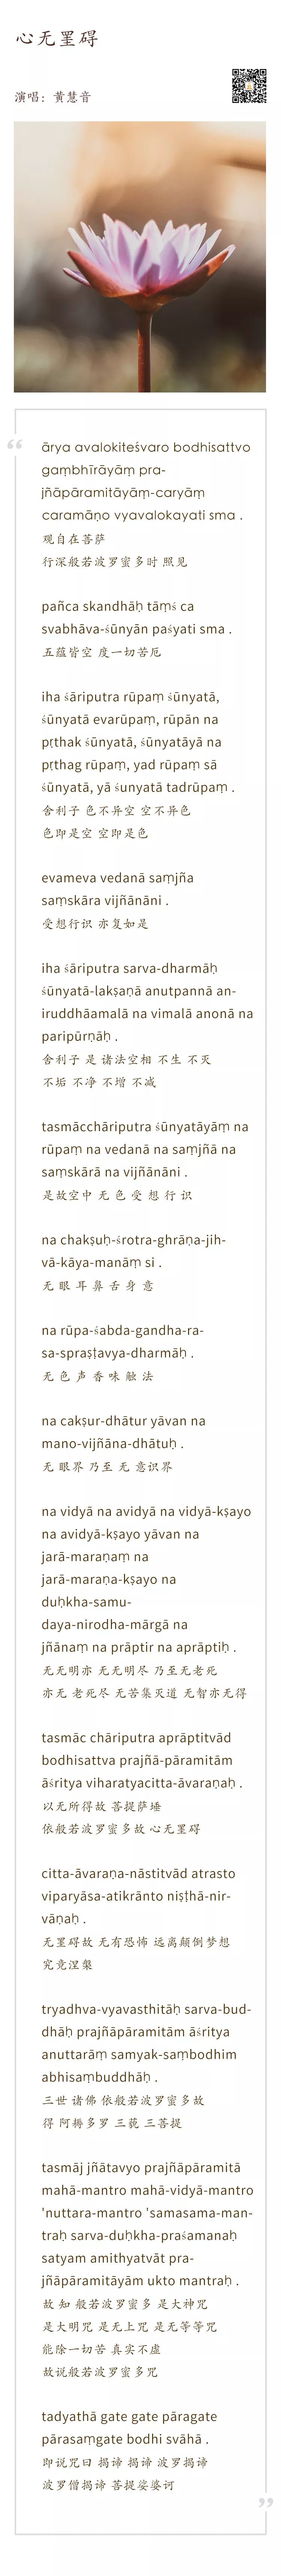 如此美妙的梵文唱诵,让你远离一切颠倒梦想,心无罣碍!